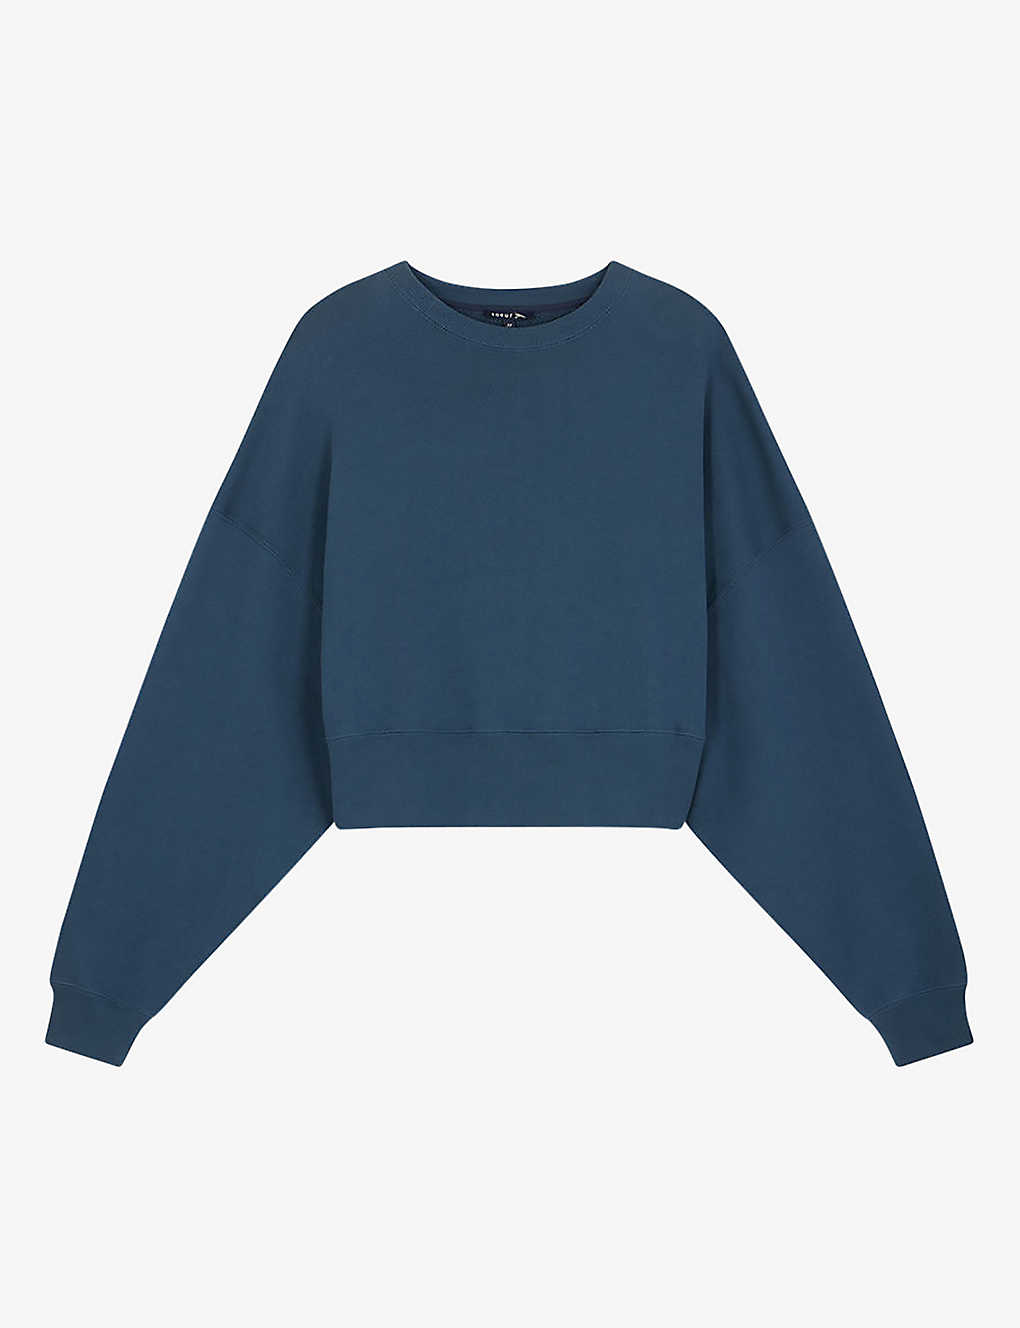 Shop Soeur Women's Slate Blue Willow Cropped Cotton Sweatshirt